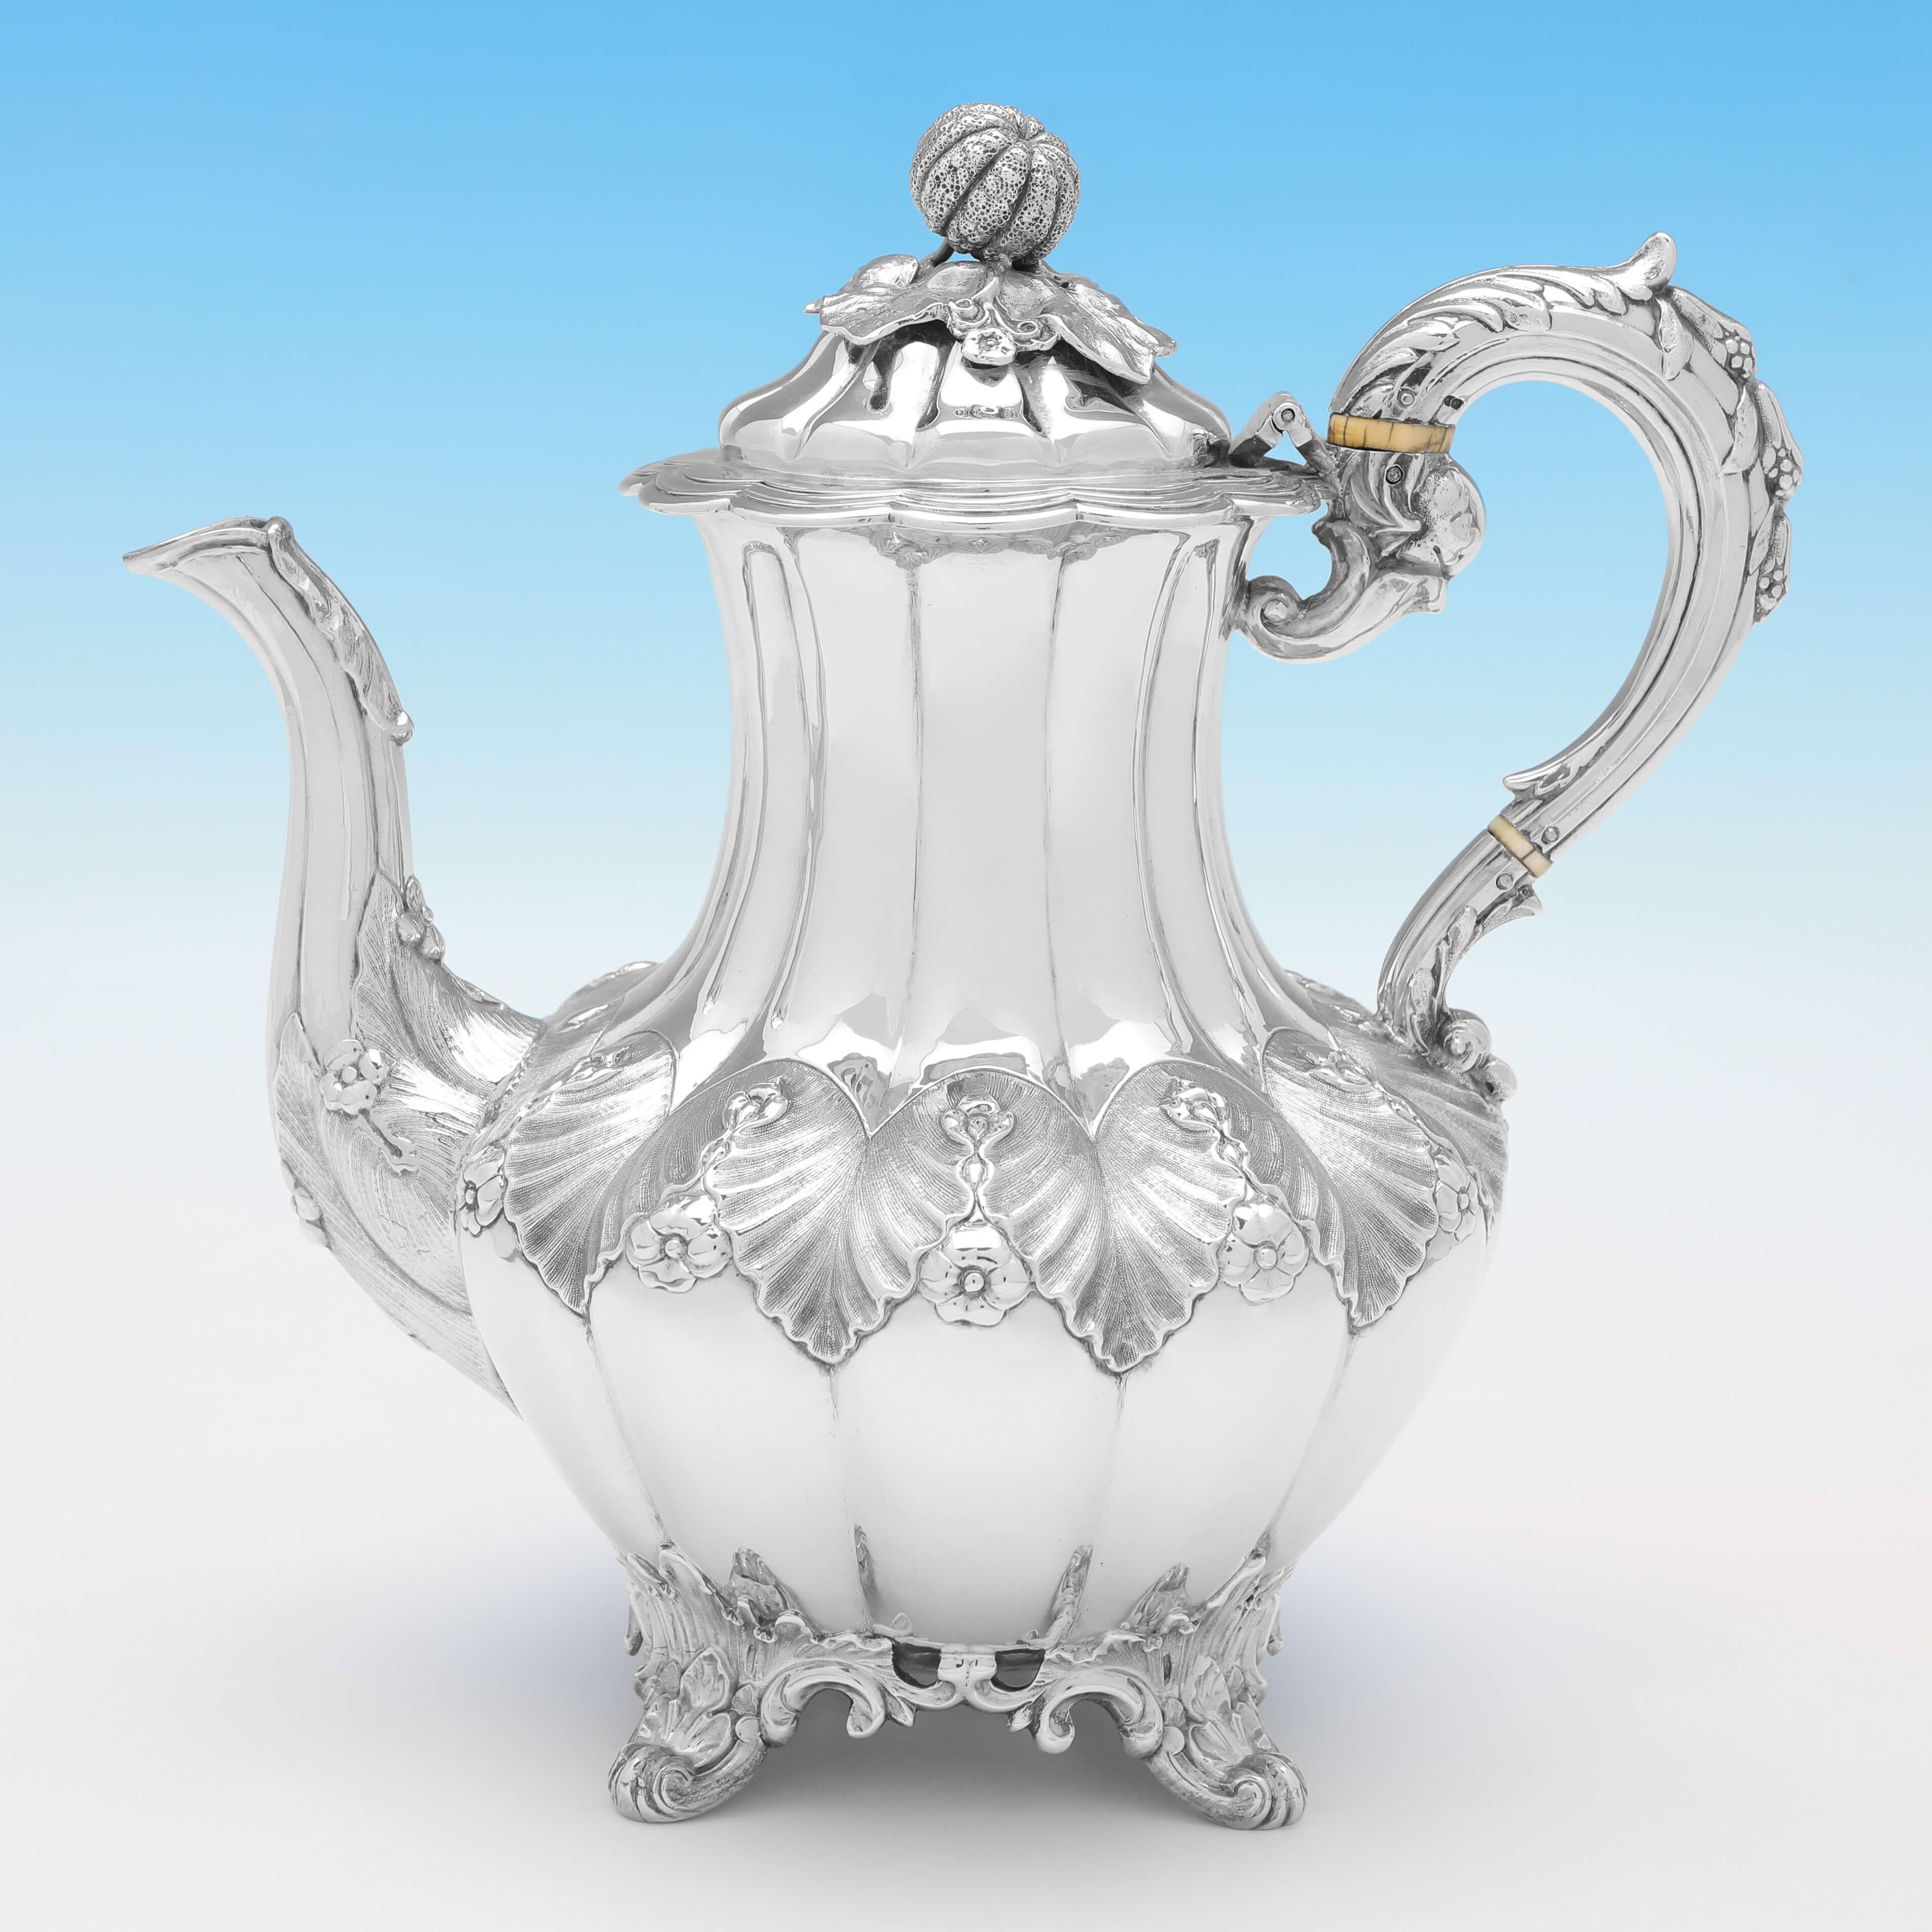 Punziert in London im Jahr 1851 von Joseph & Albert Savory, diese attraktive, antike Sterling Silber Tee-Set, besteht aus einer Kaffeekanne, Teekanne, Sahnekanne und Zuckerdose, die alle in einer 